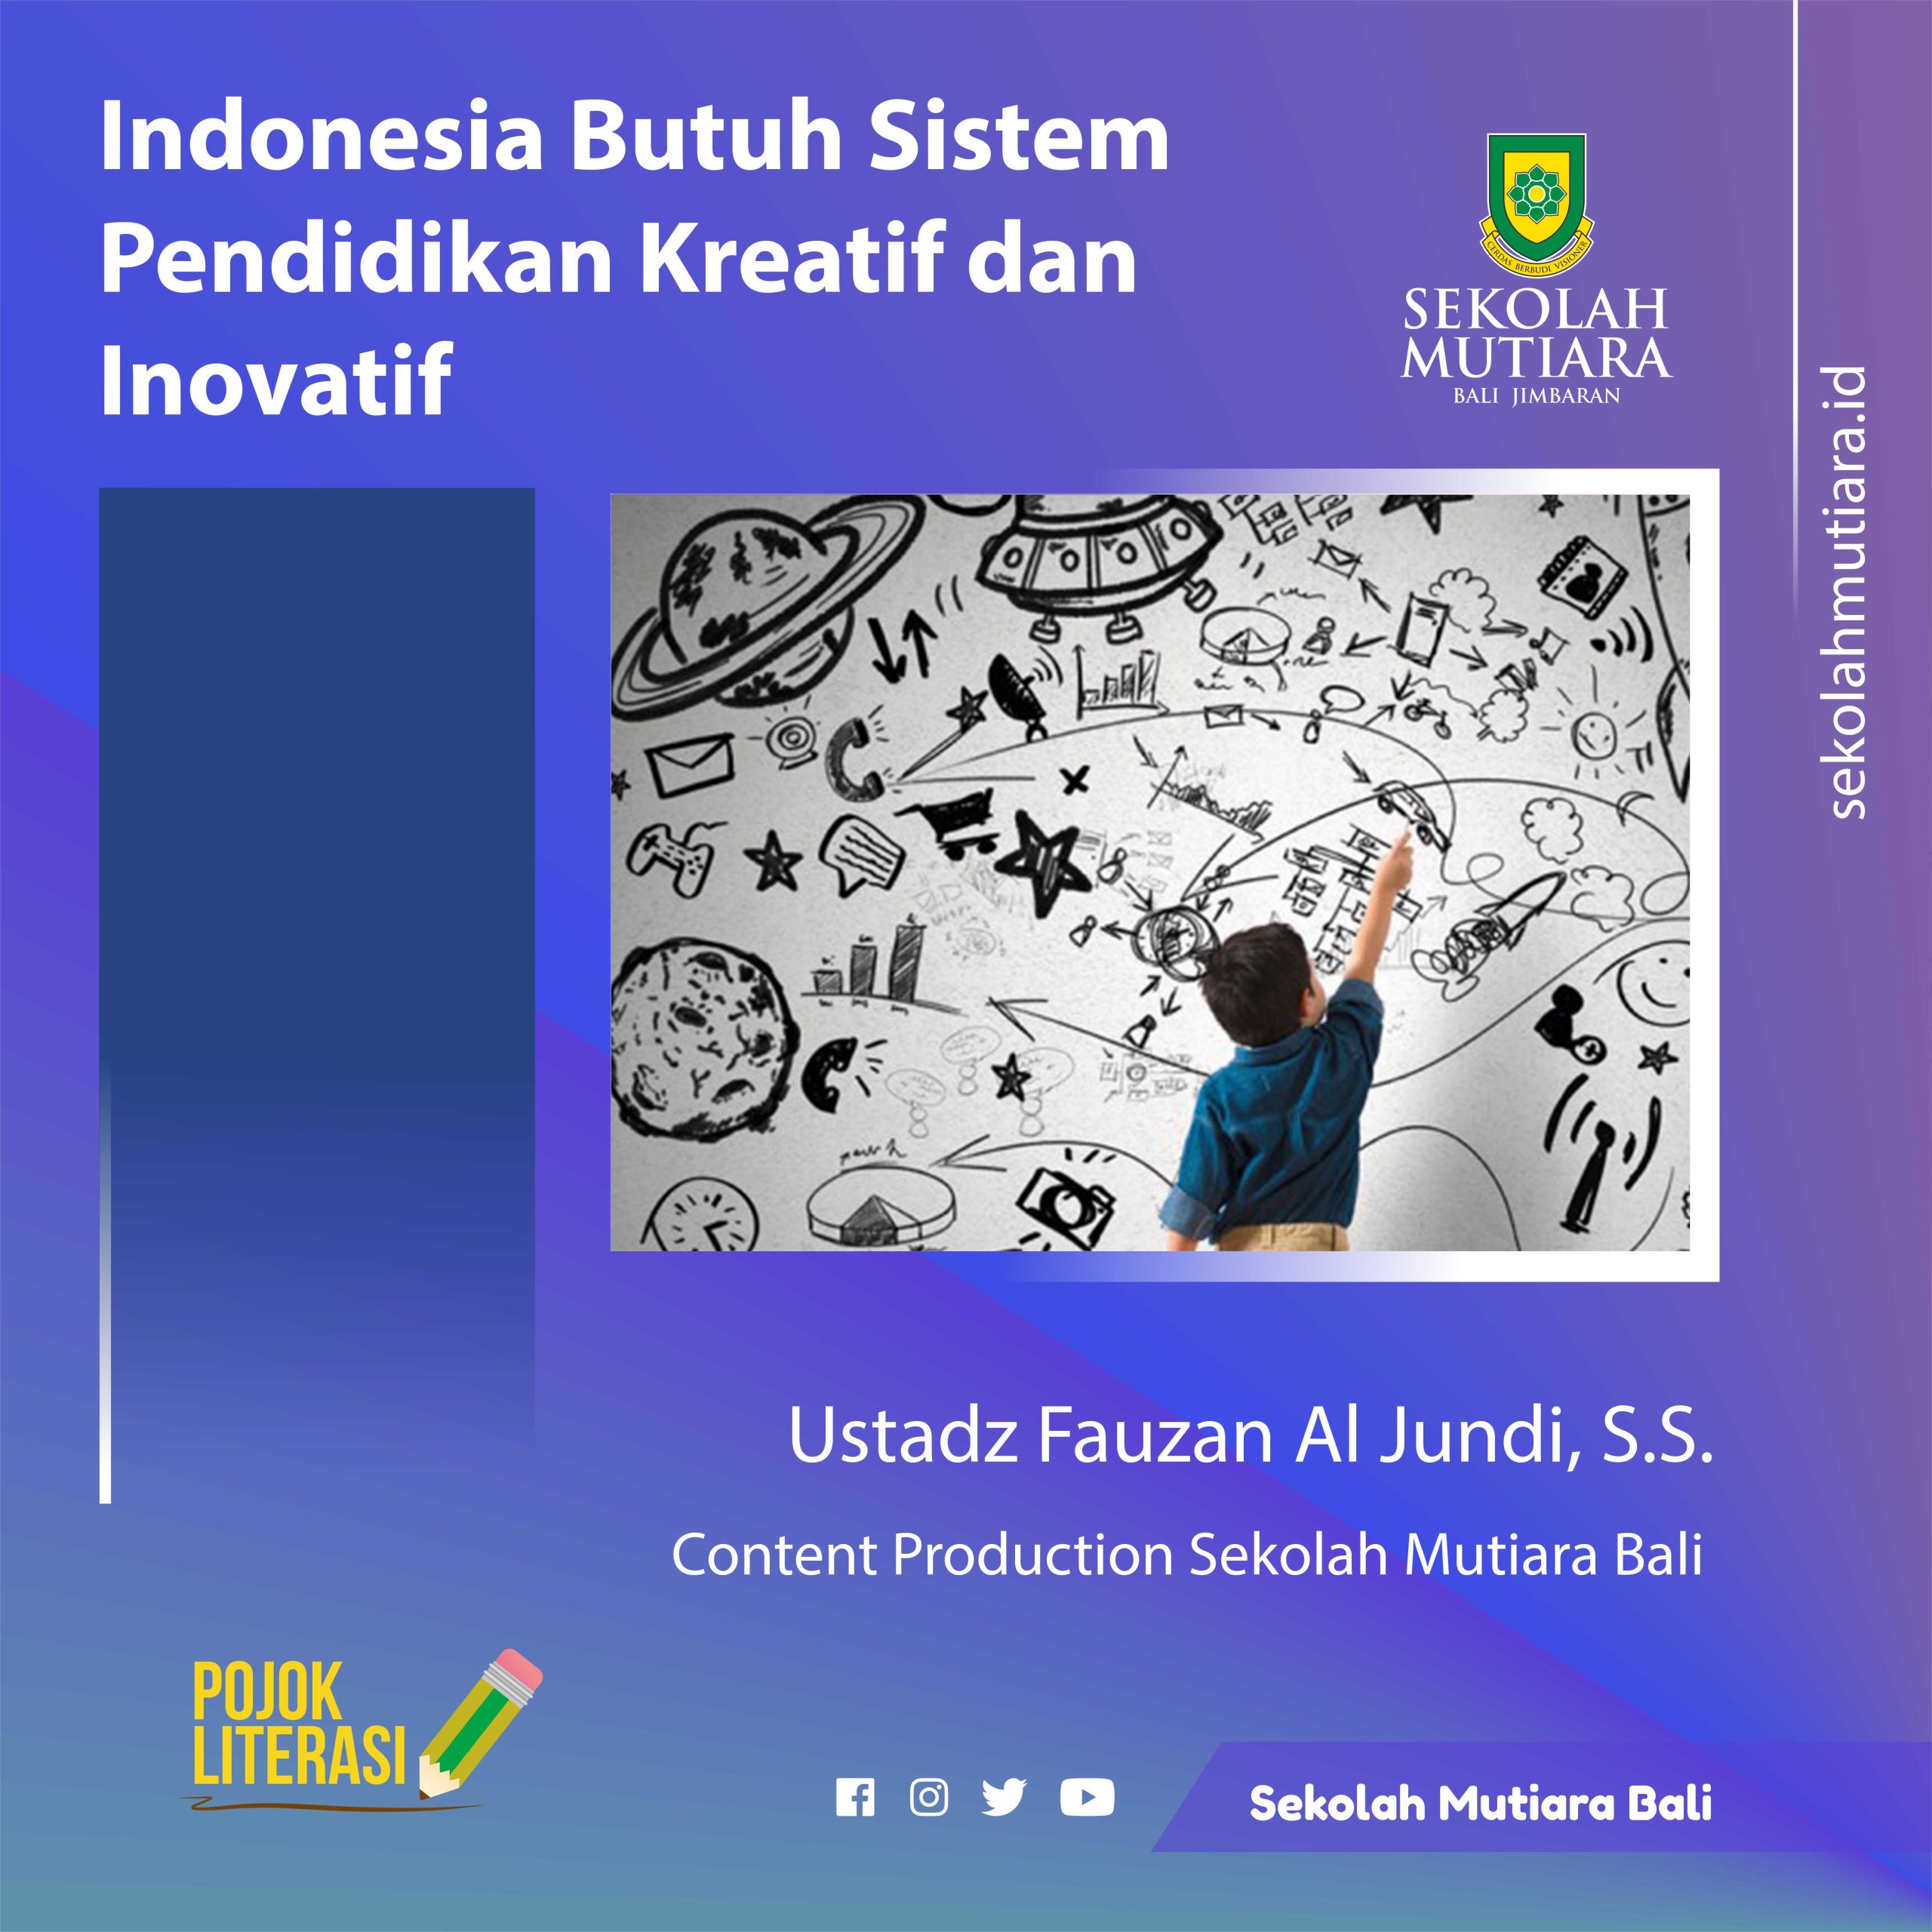 Indonesia Butuh Sistem Pendidikan Kreatif dan Inovatif